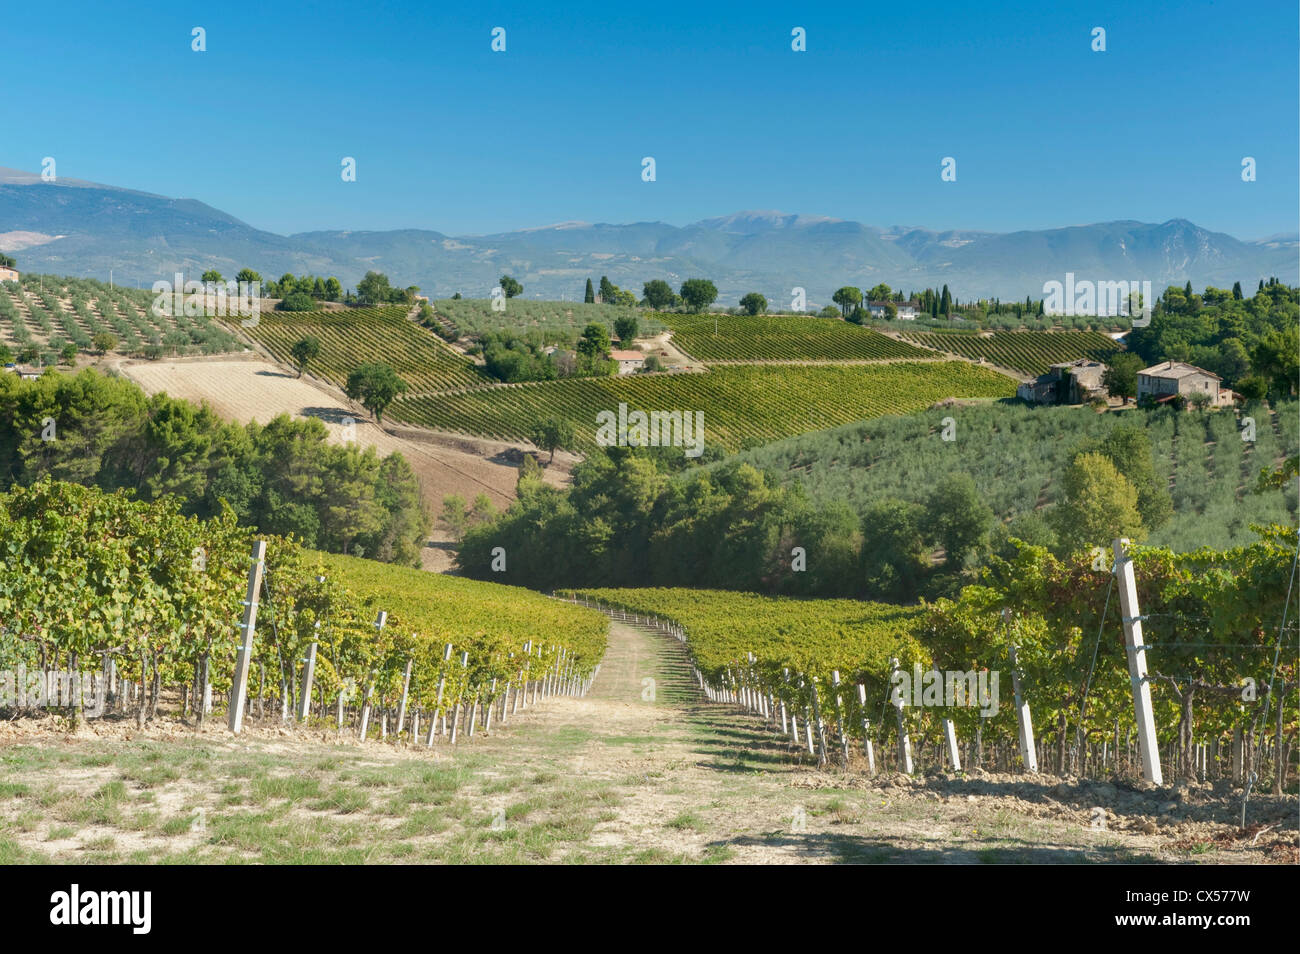 L'Europe, l'Italie, l'Ombrie, près de Montefalco, vignes et oliviers Banque D'Images